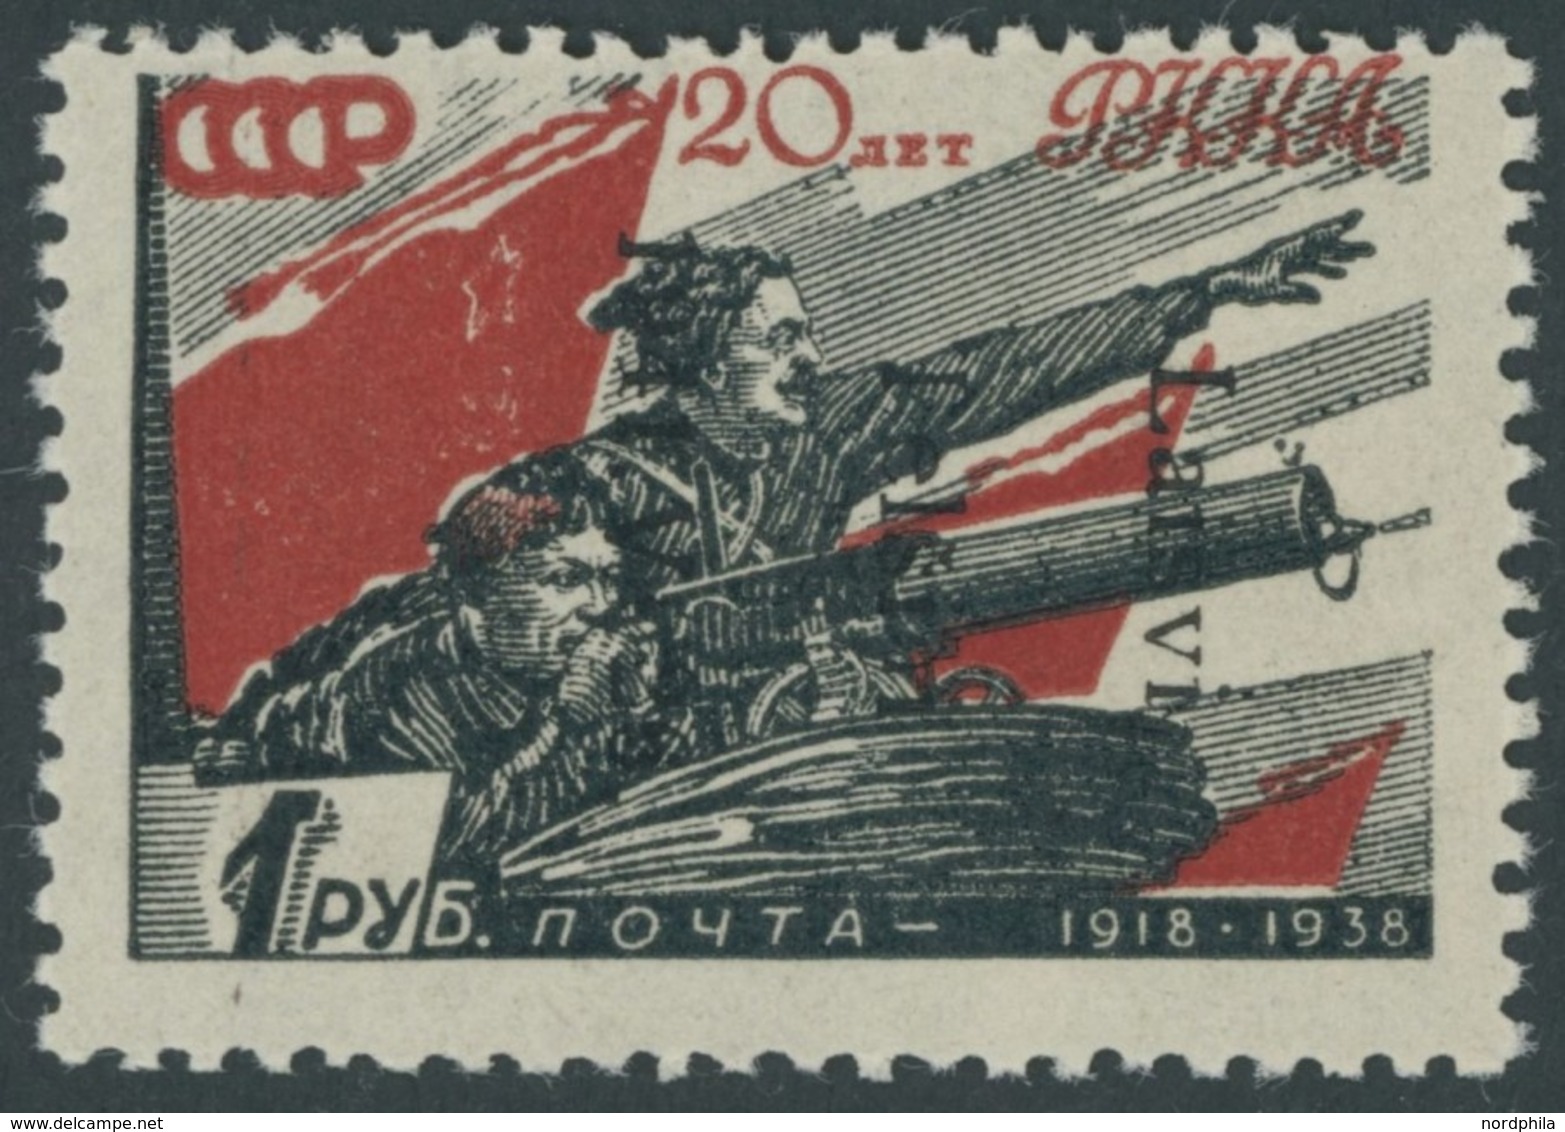 TELSCHEN 10IK **, 1941, 80 K. Rote Armee, Type I Mit Aufdruck Von Oben Nach Unten (Feld 34), Postfrisch, Pracht, RR!, Fo - Occupation 1938-45